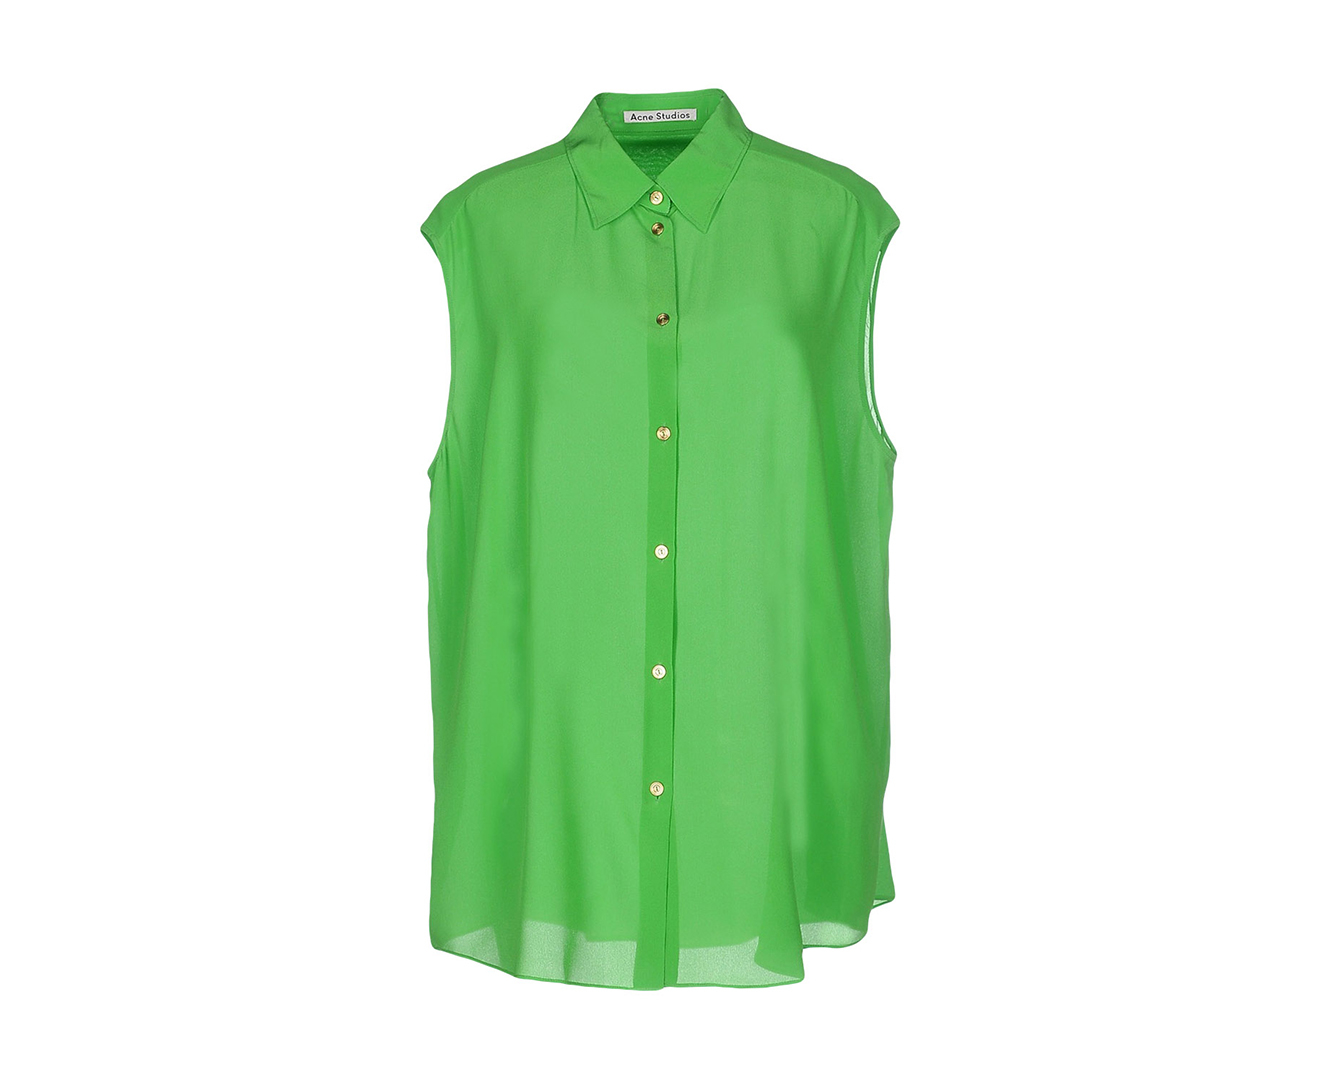 Acne Studios Women's Silk Shirt - Green | Catch.co.nz